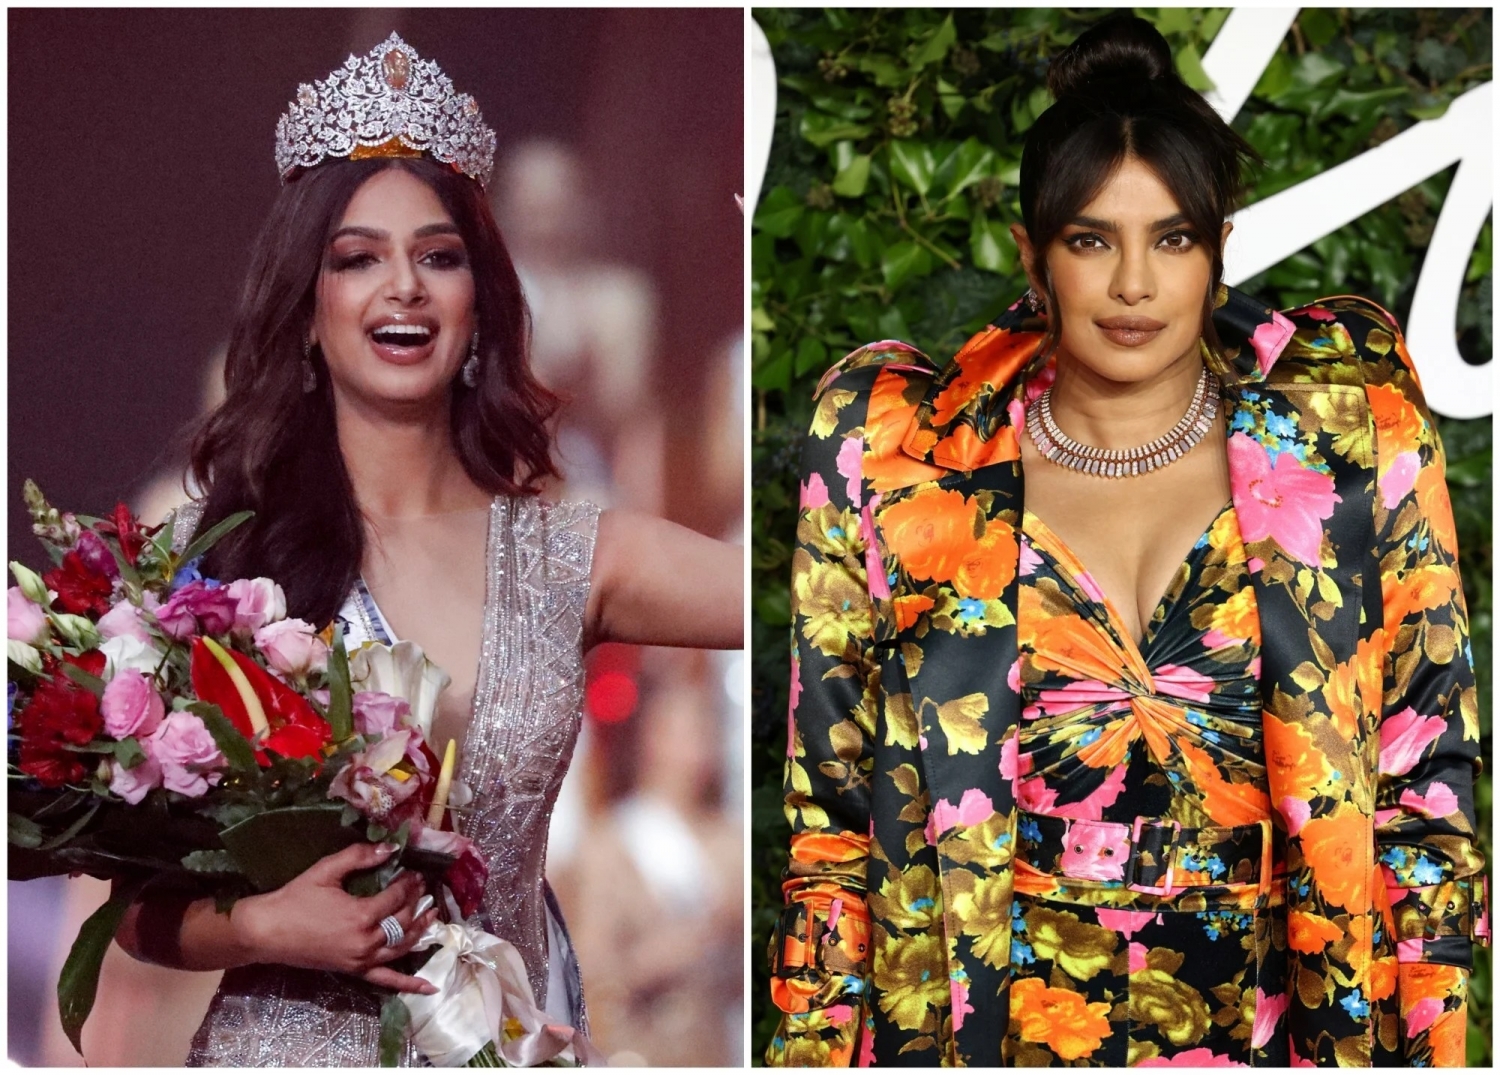 Mỹ nhân Ấn Độ Harnaaz Sandhu và chặng đường giành vương miện Miss Universe 2021 danh giá